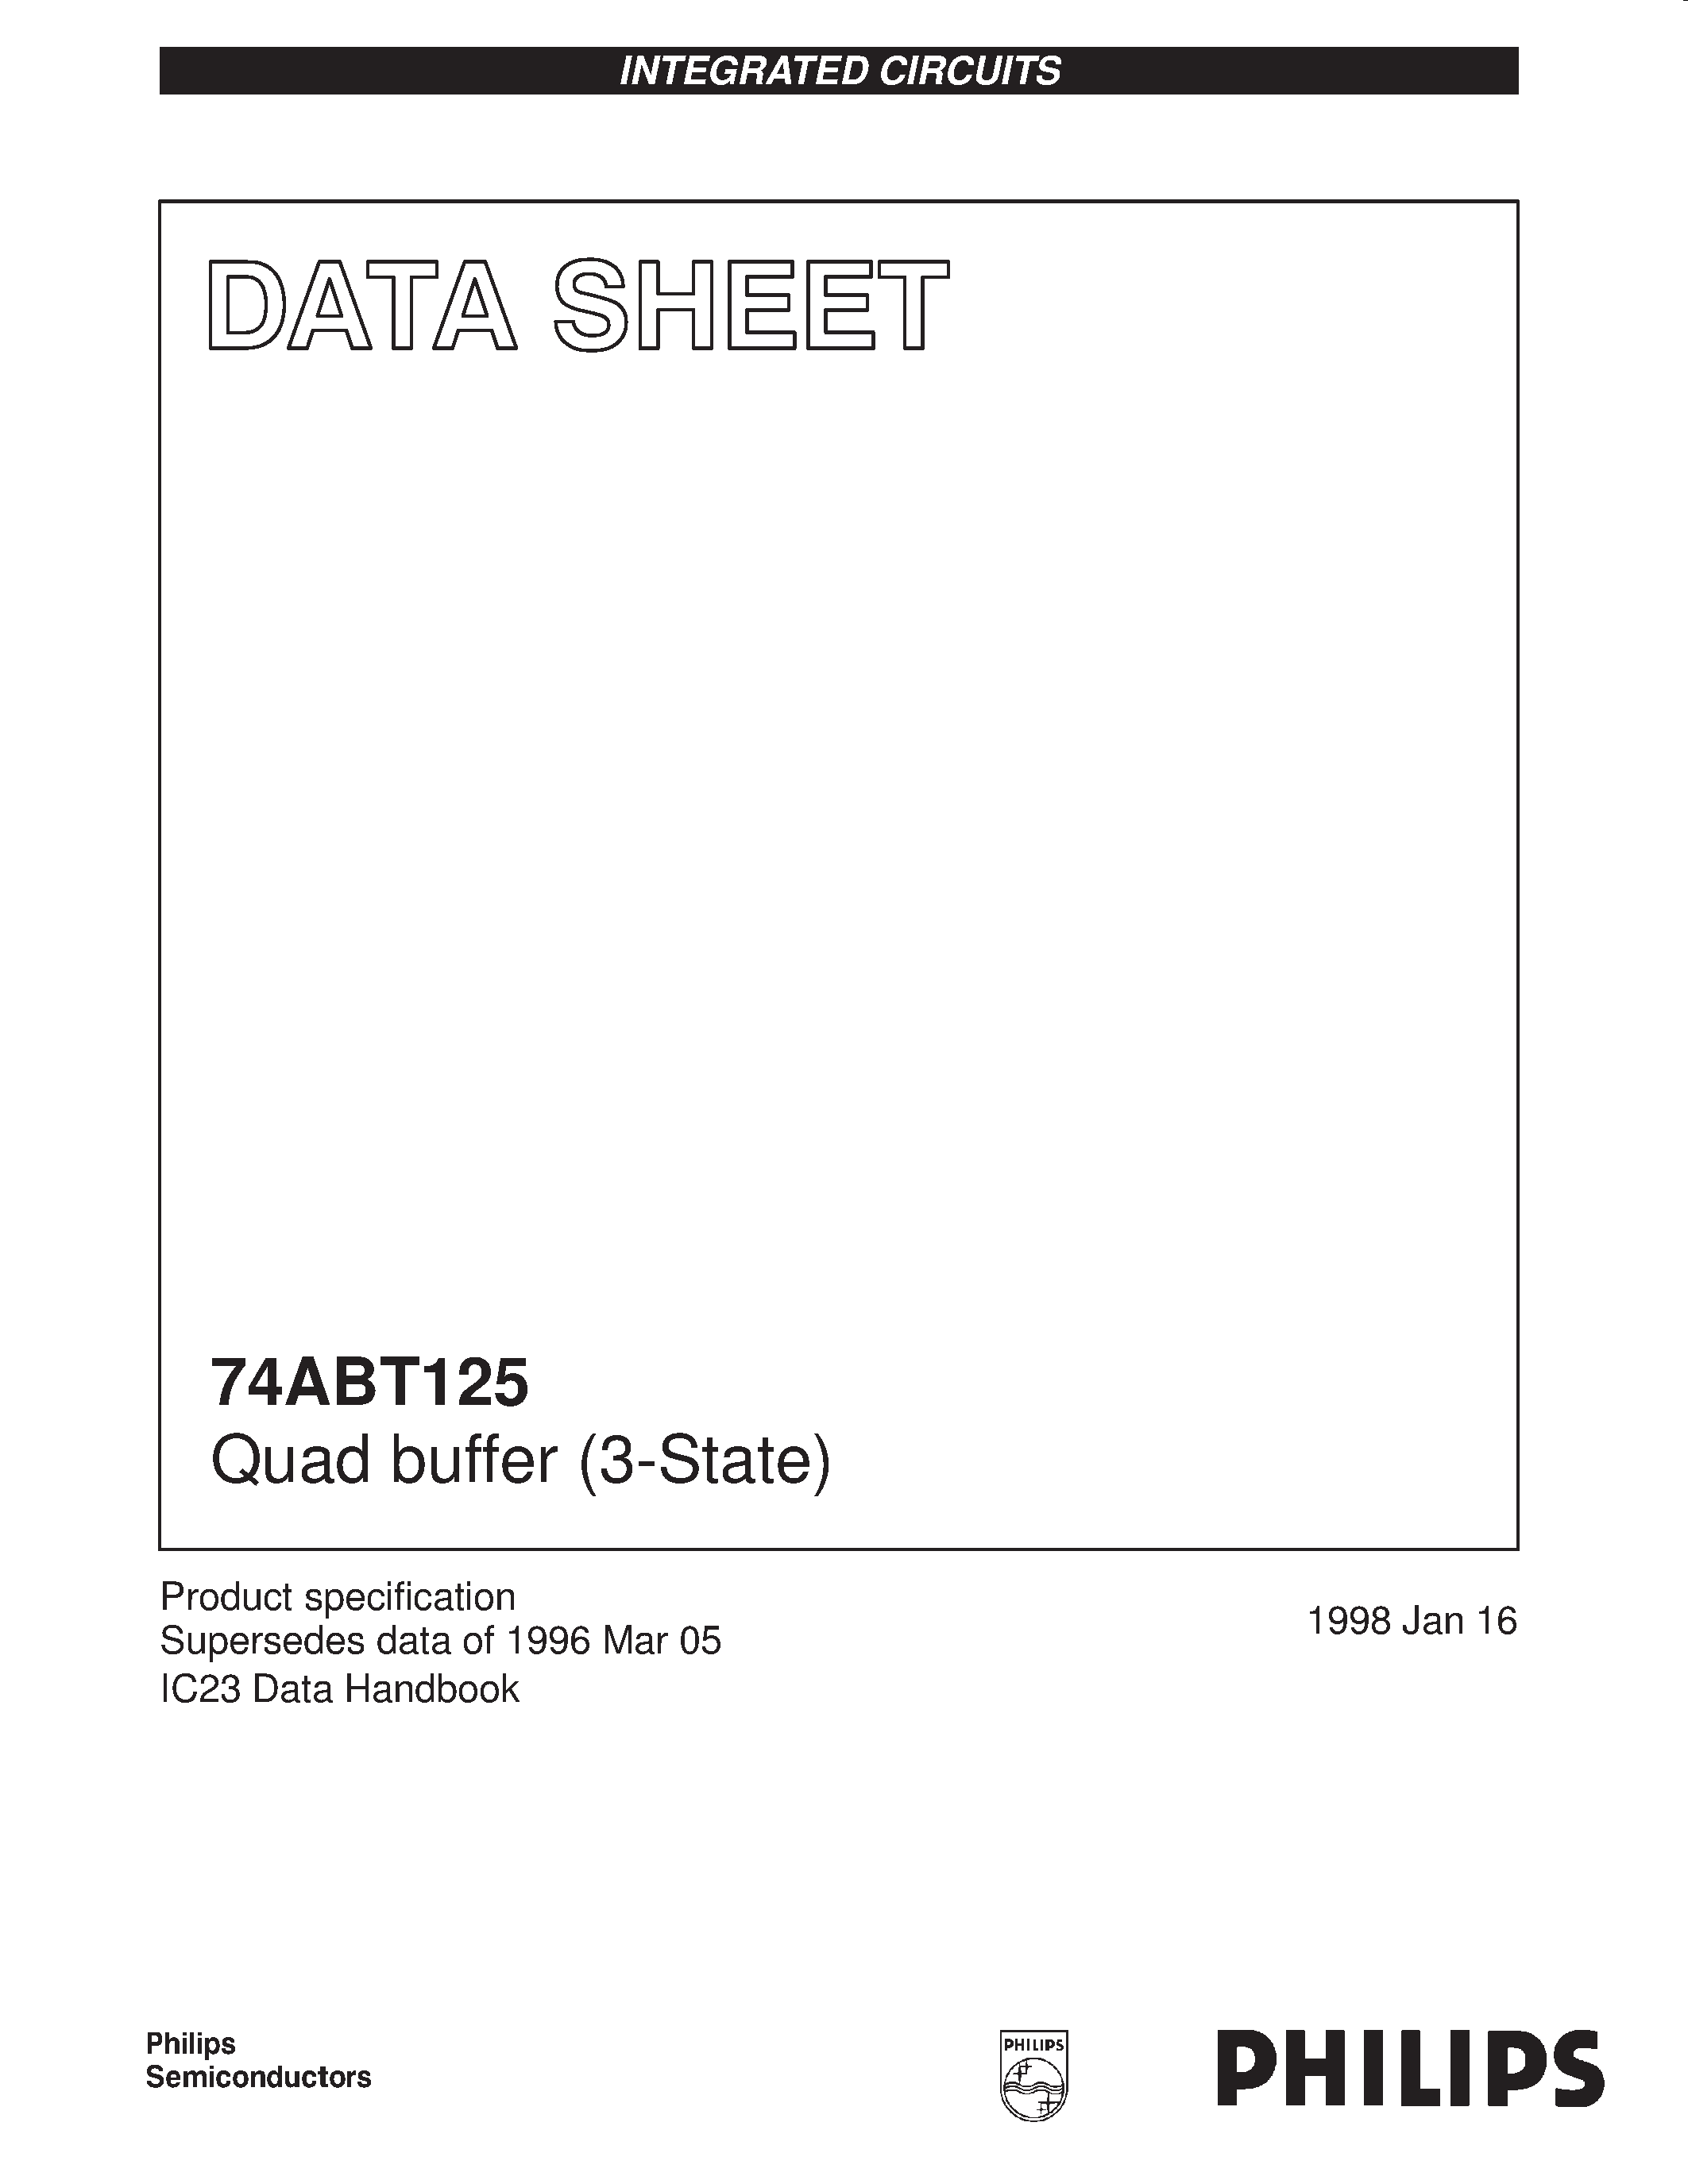 Даташит 74ABT125DB - Quad buffer 3-State страница 1